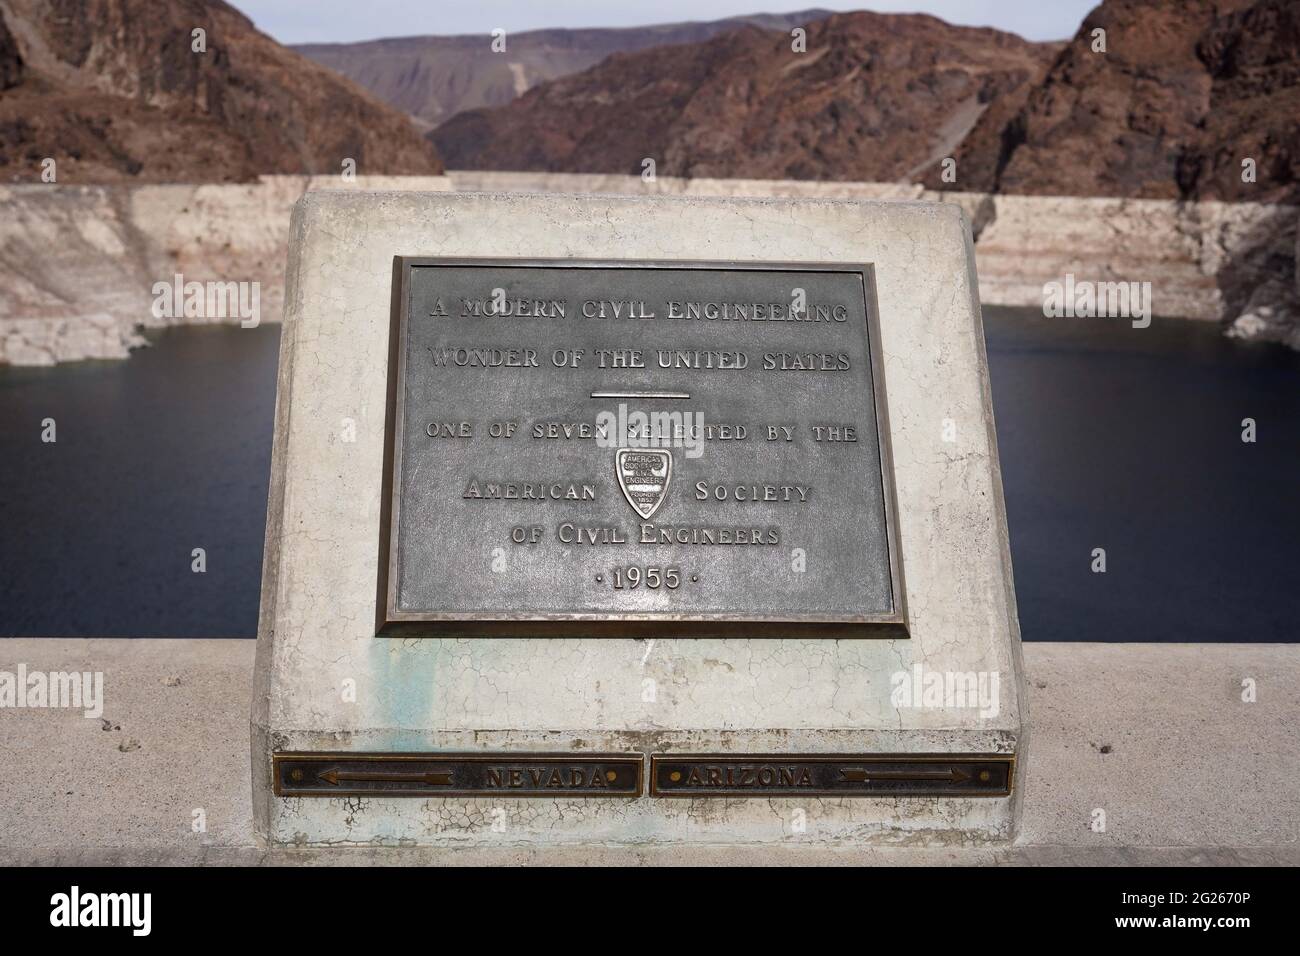 Un signe de la Société américaine des ingénieurs civils reconnaît le barrage Hoover comme l'une des sept merveilles de génie civil moderne des États-Unis, dimanche, Marc Banque D'Images